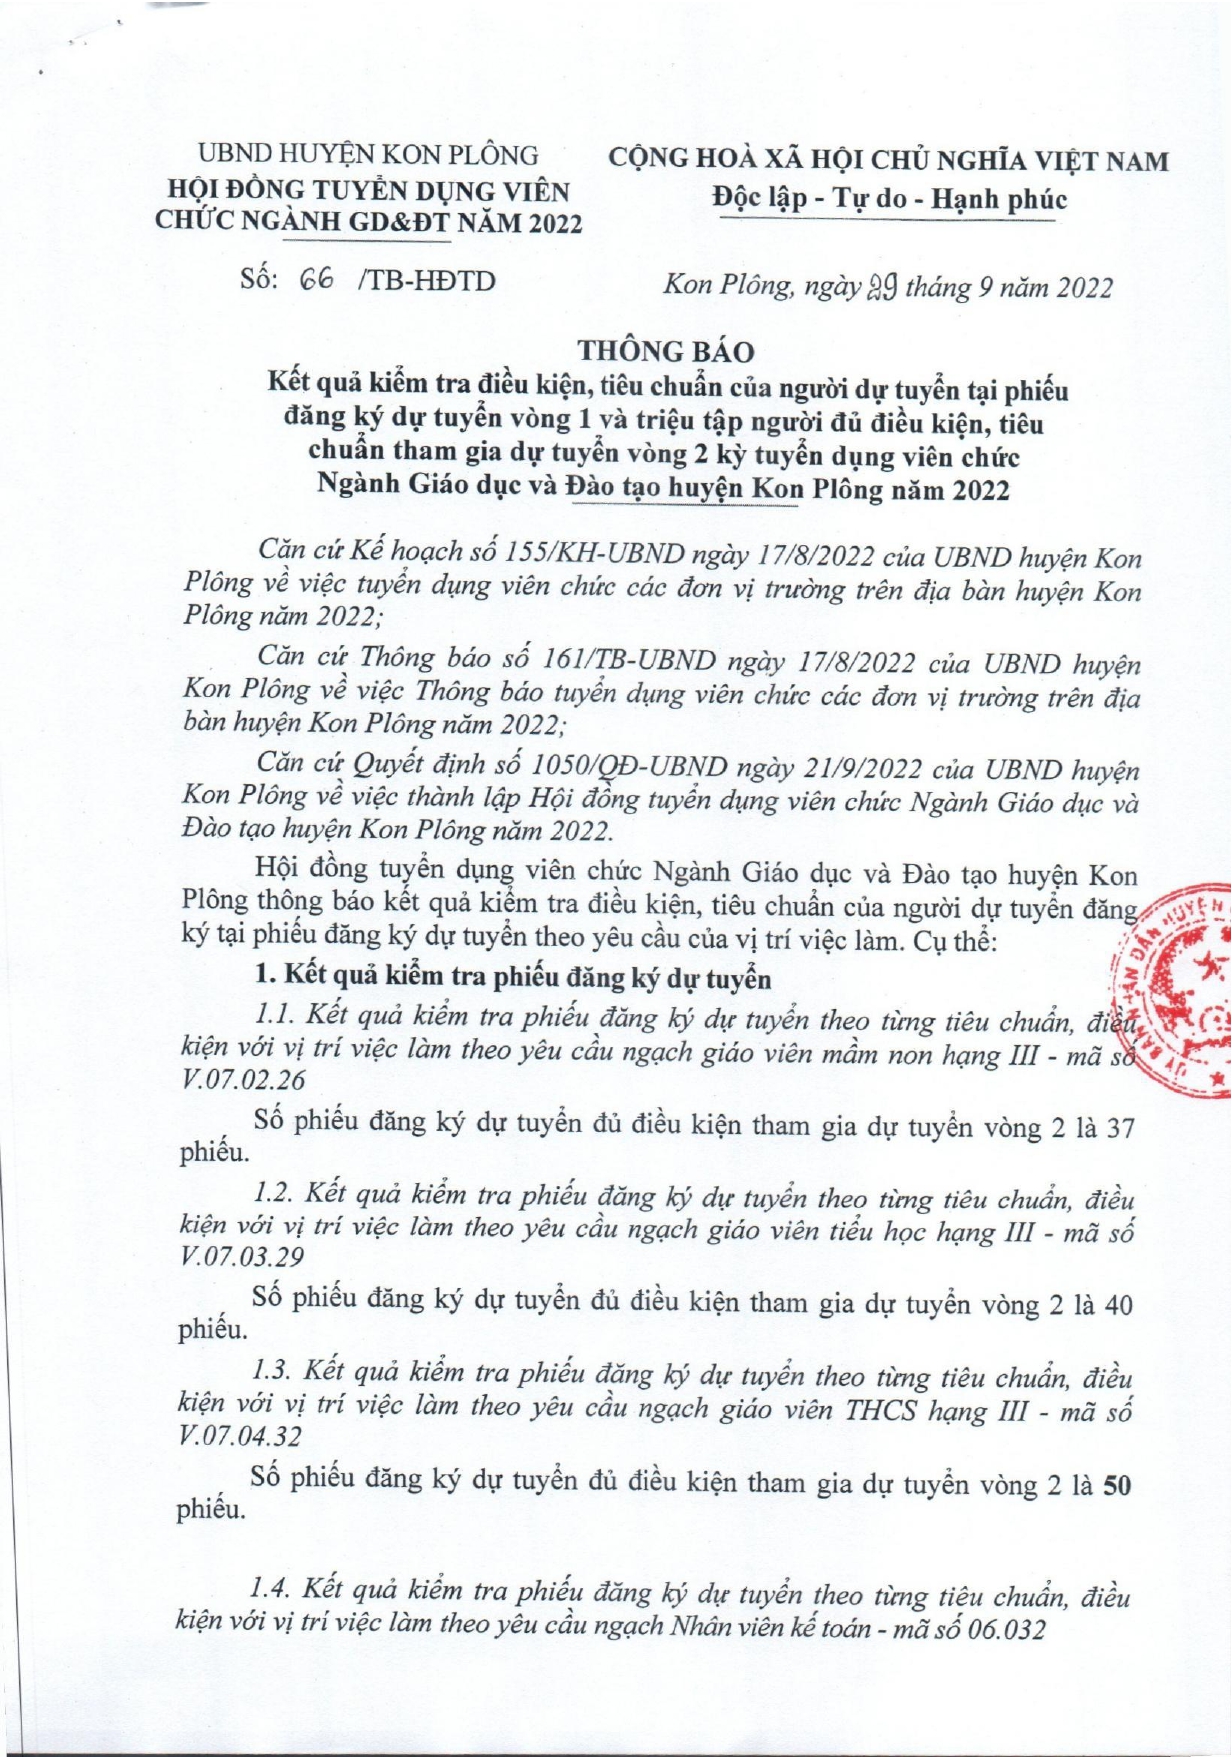 Thông báo 66/TB-HĐTD, ngày 29/9/2022 về kết quả kiểm tra điều kiện, tiêu chuẩn của người dự tuyển tại phiếu đăng ký dự tuyển vòng 1 và đủ điều kiện tiêu chuẩn tham gia dự tuyển vòng 2 tuyển dụng viên chức ngành GD&ĐT huyện Kon Plông